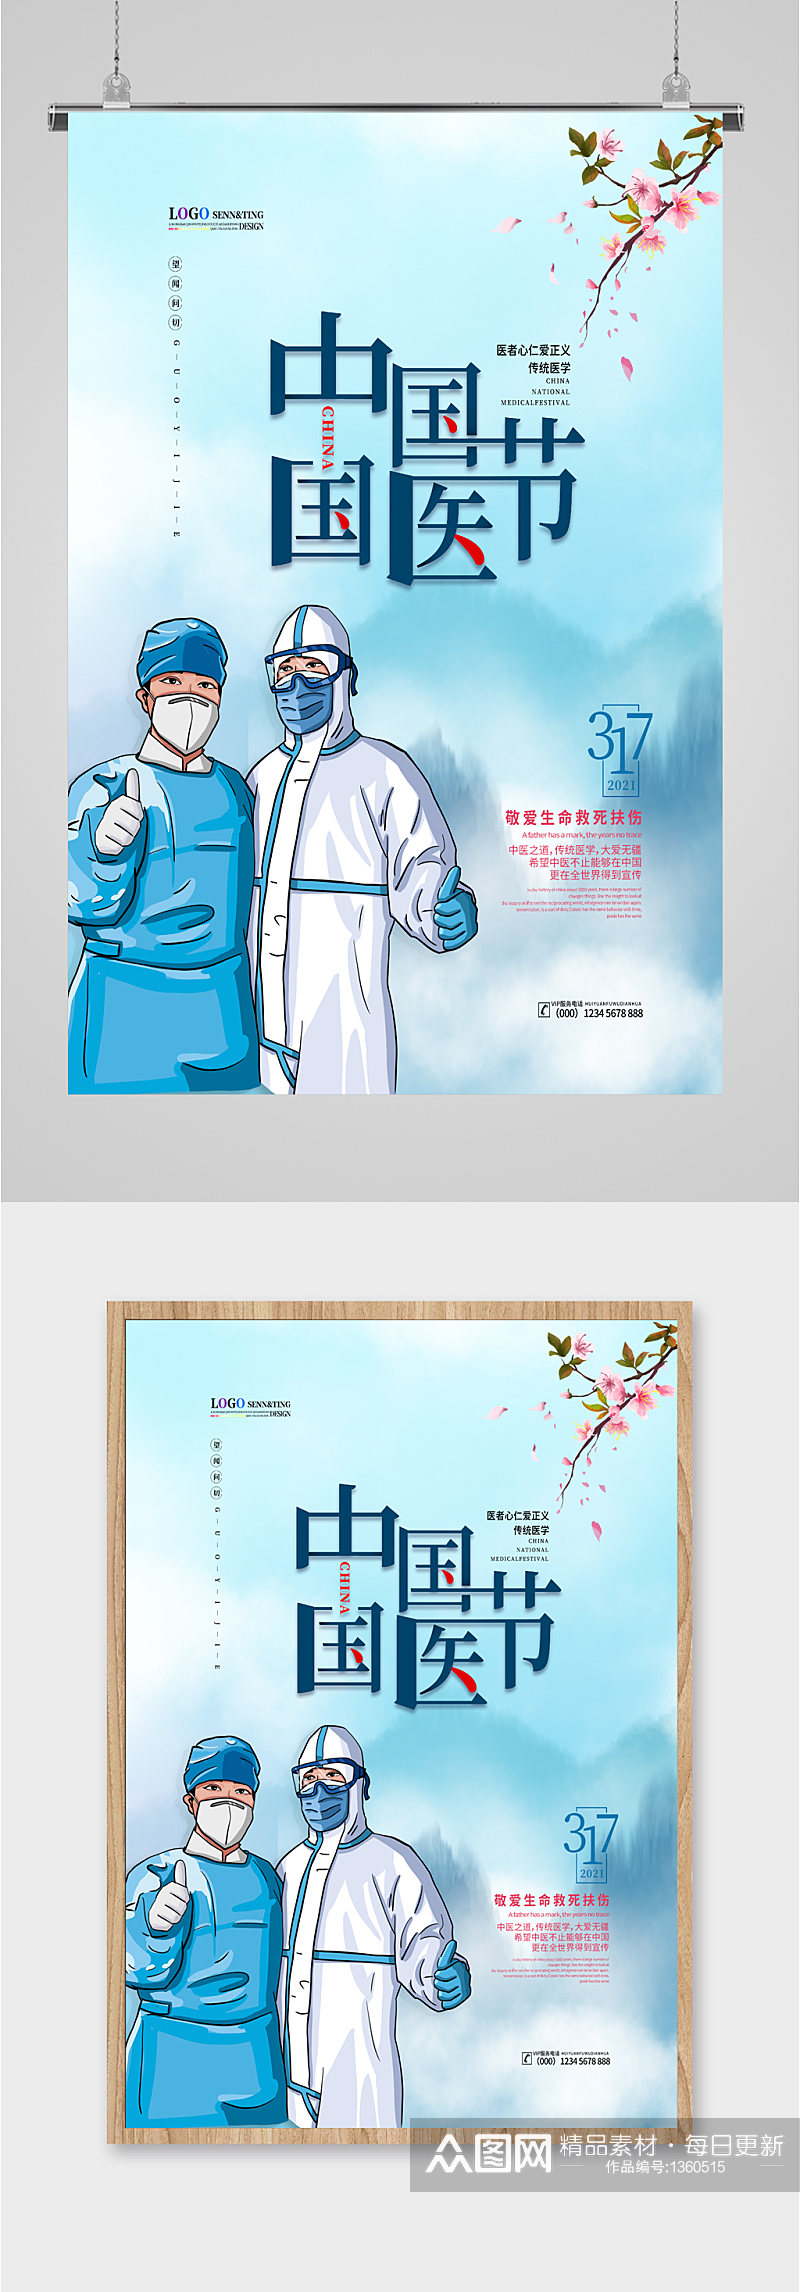 中国国医节宣传海报素材